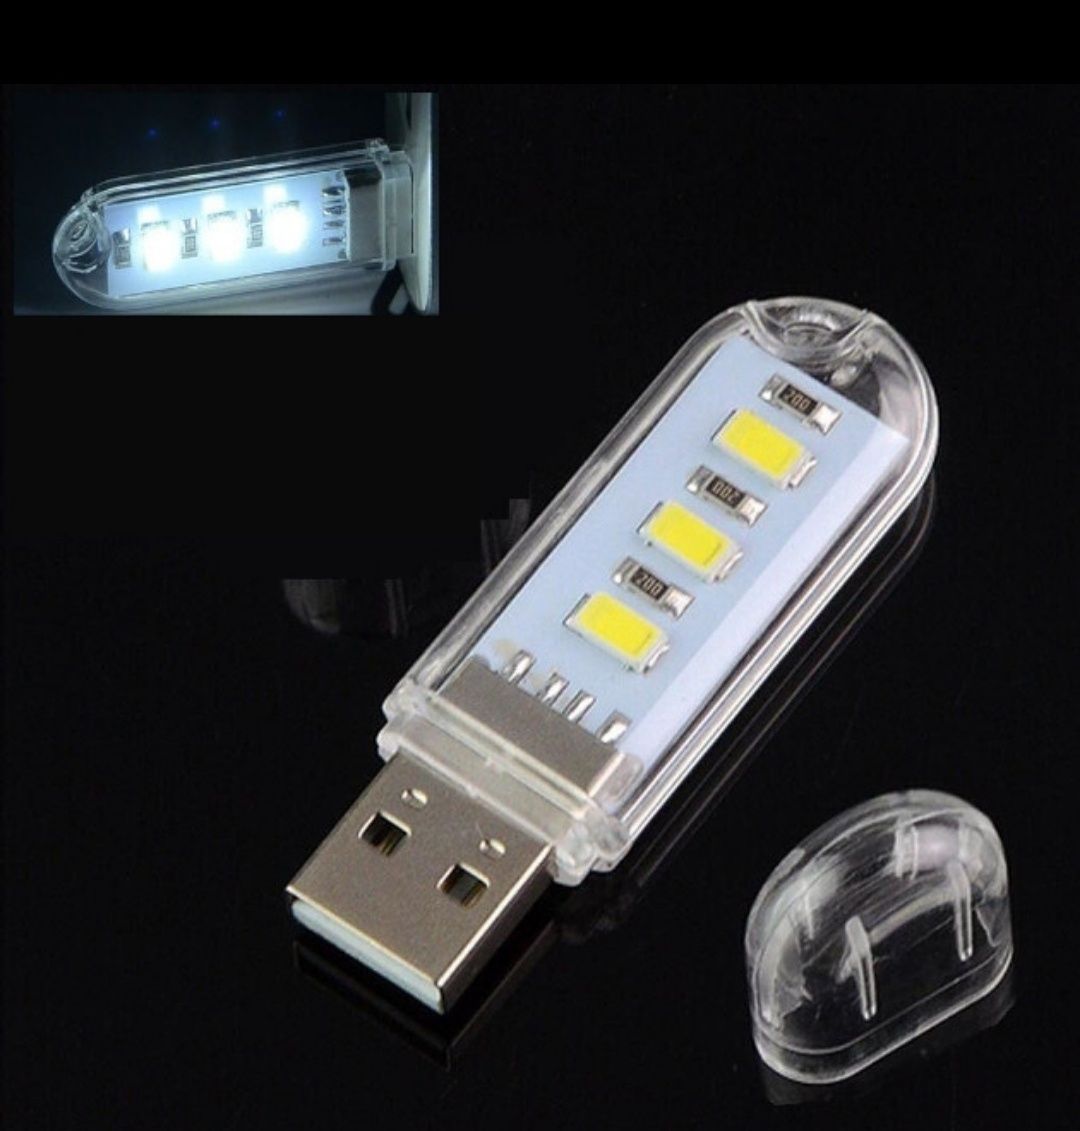 USB светодиодный фонарик, три светодиода